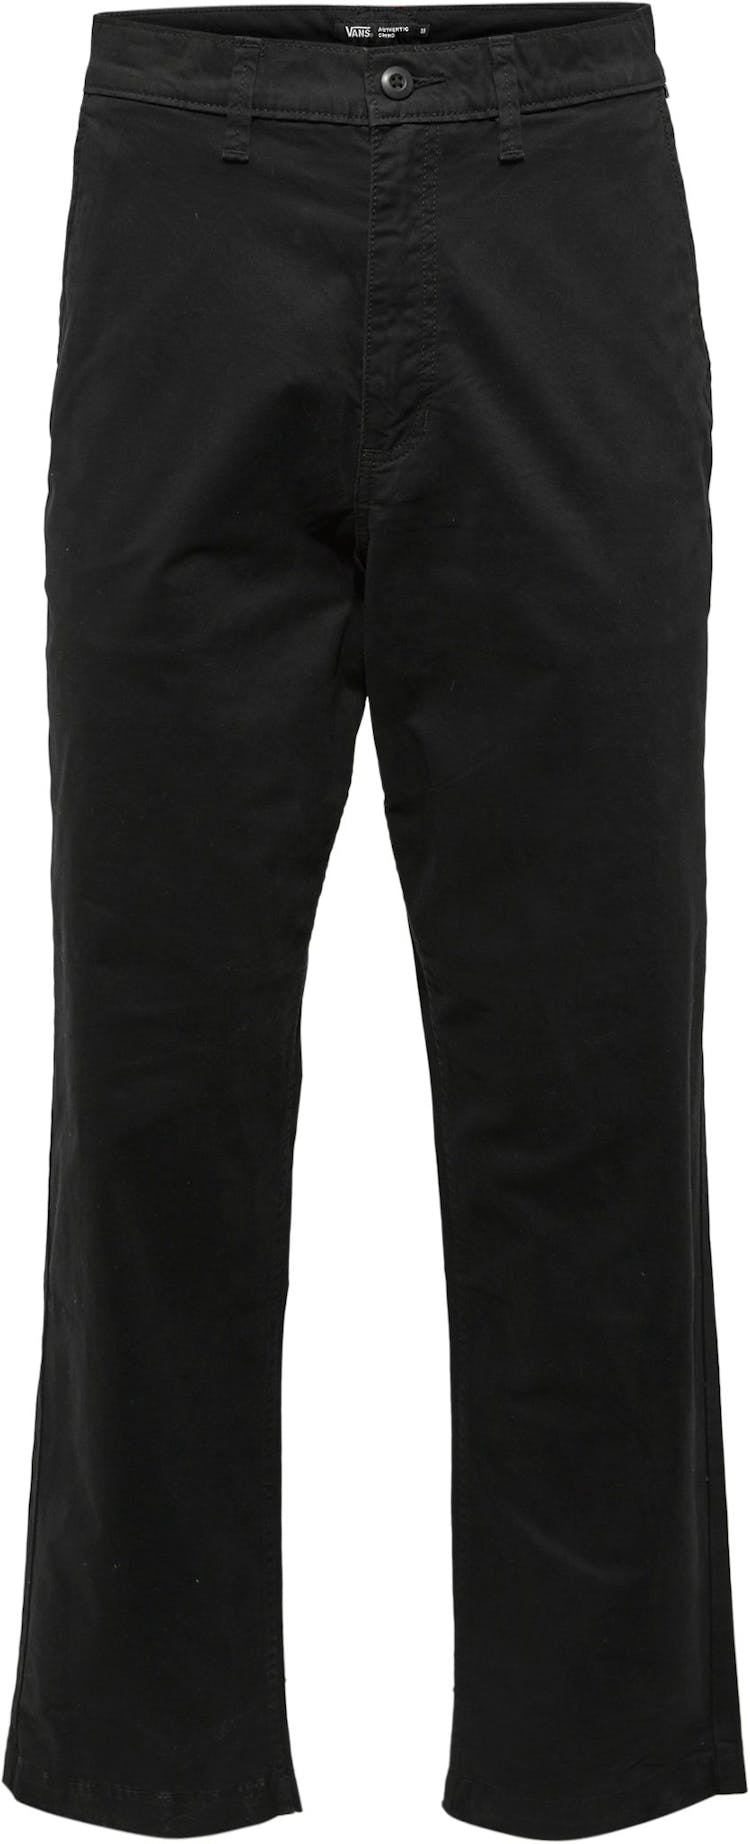 Numéro de l'image de la galerie de produits 1 pour le produit Pantalon chino ample fuselé Authentic - Homme